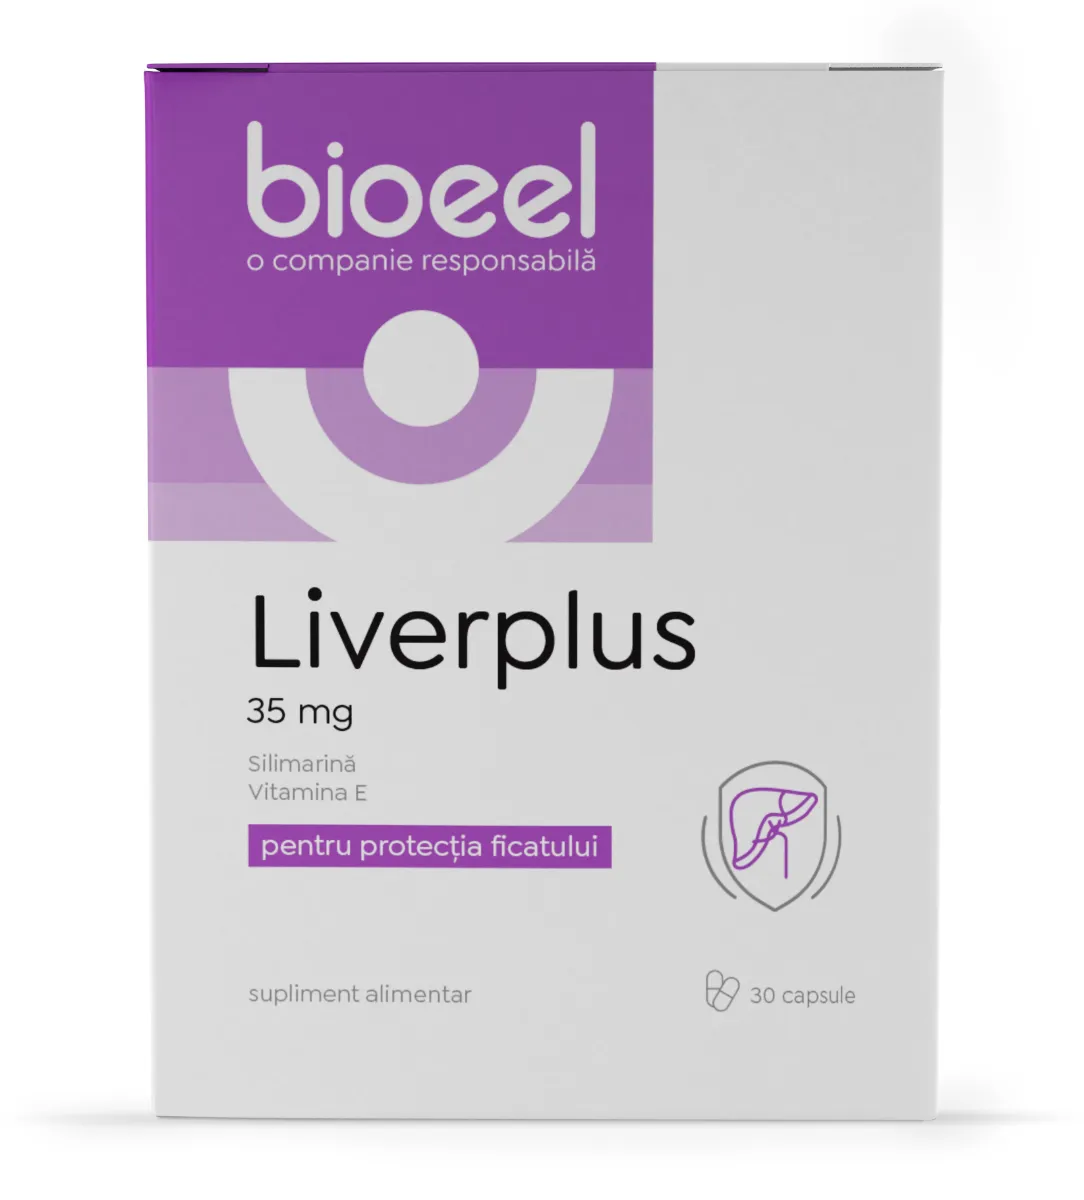 Liverplus 35mg, 80 capsule, Bioeel